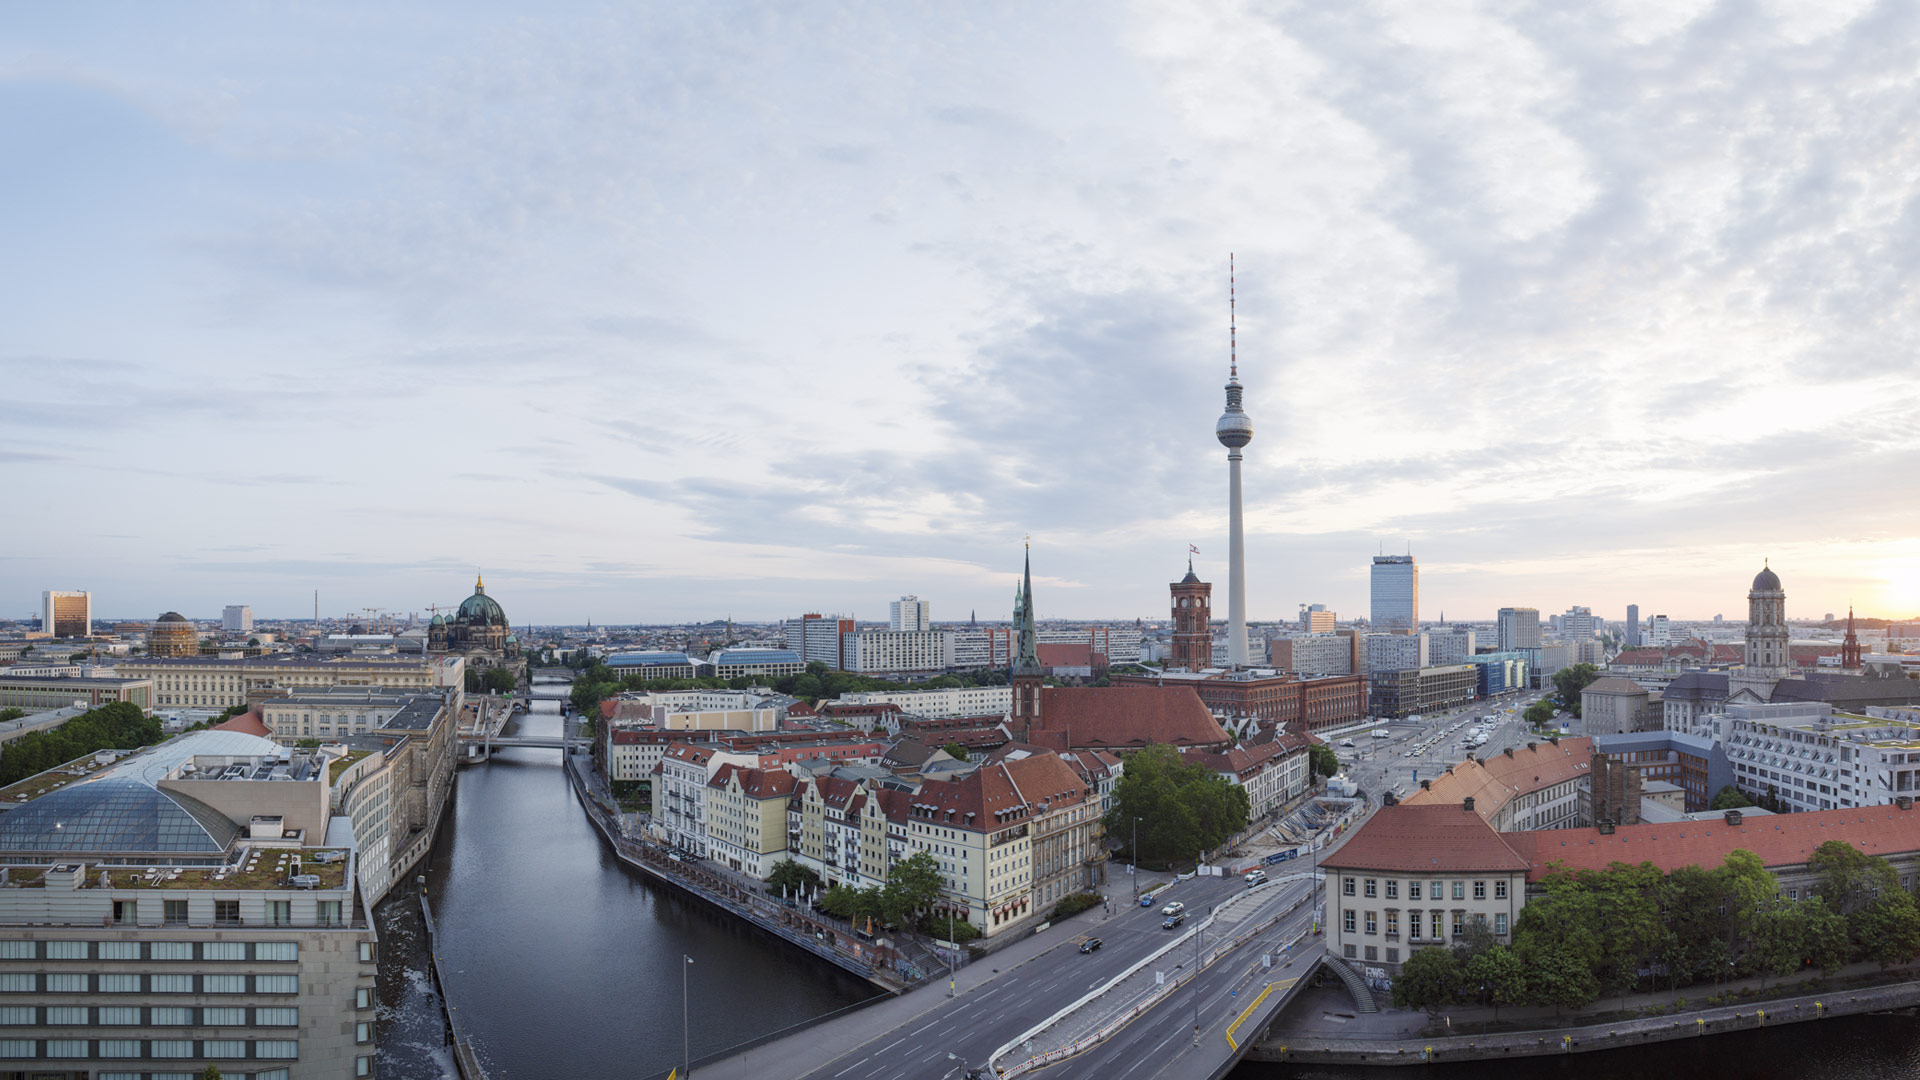 Vy över tv-tornet och andra byggnader i Berlin